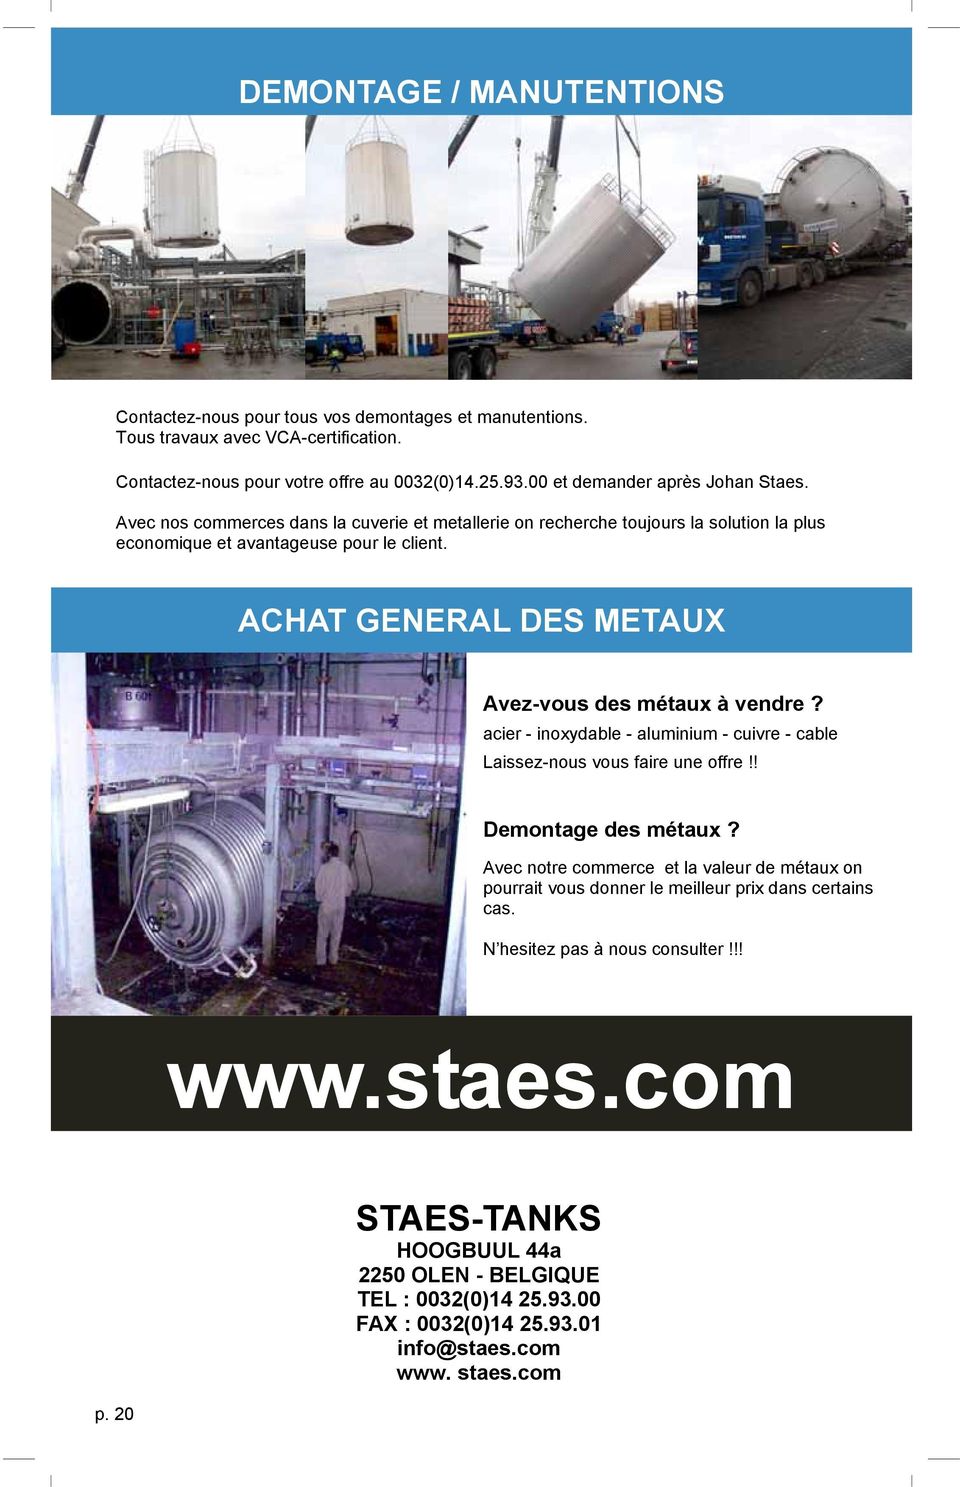 ACHAT GENERAL DES METAUX Avez-vous des métaux à vendre? acier - inoxydable - aluminium - cuivre - cable Laissez-nous vous faire une offre!! Demontage des métaux?